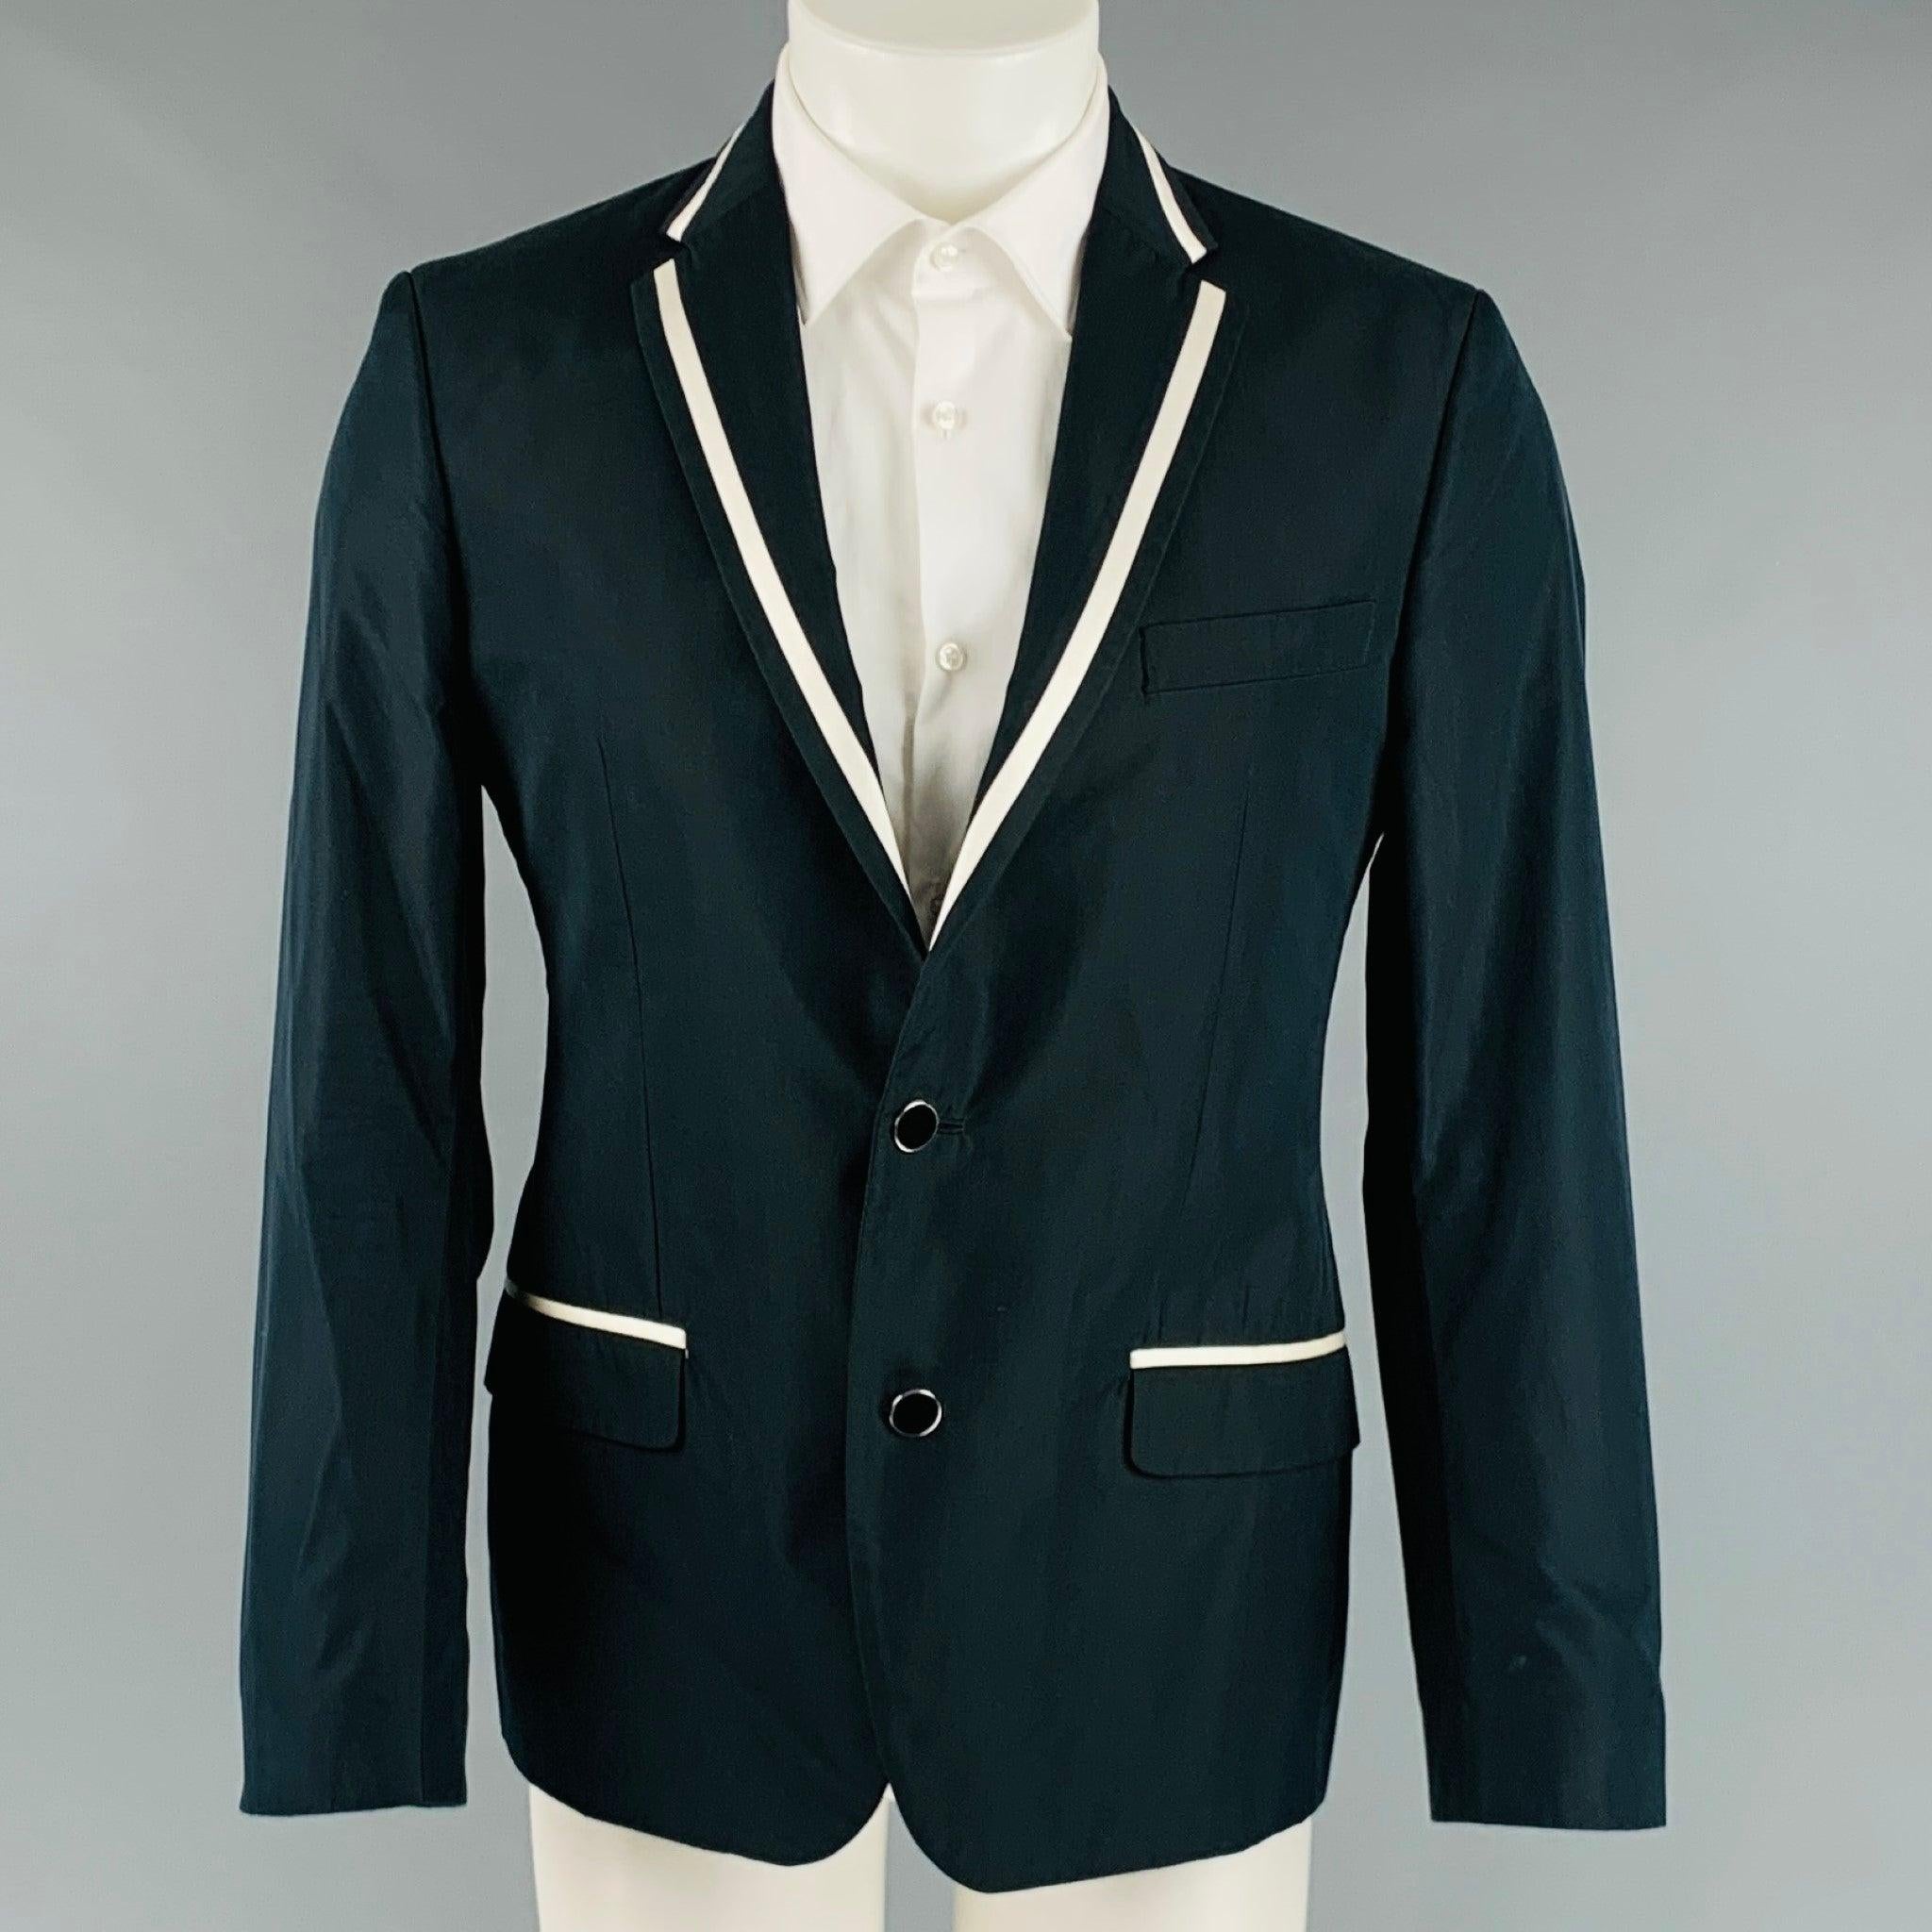 Le manteau sport D&G by DOLCE & GABBANA est réalisé en coton mélangé noir et blanc, avec une doublure intégrale. Il présente un revers à cran, des poches à rabat et une fermeture à double bouton. Fabriqué en Italie. Excellent état. 

Marqué :   50